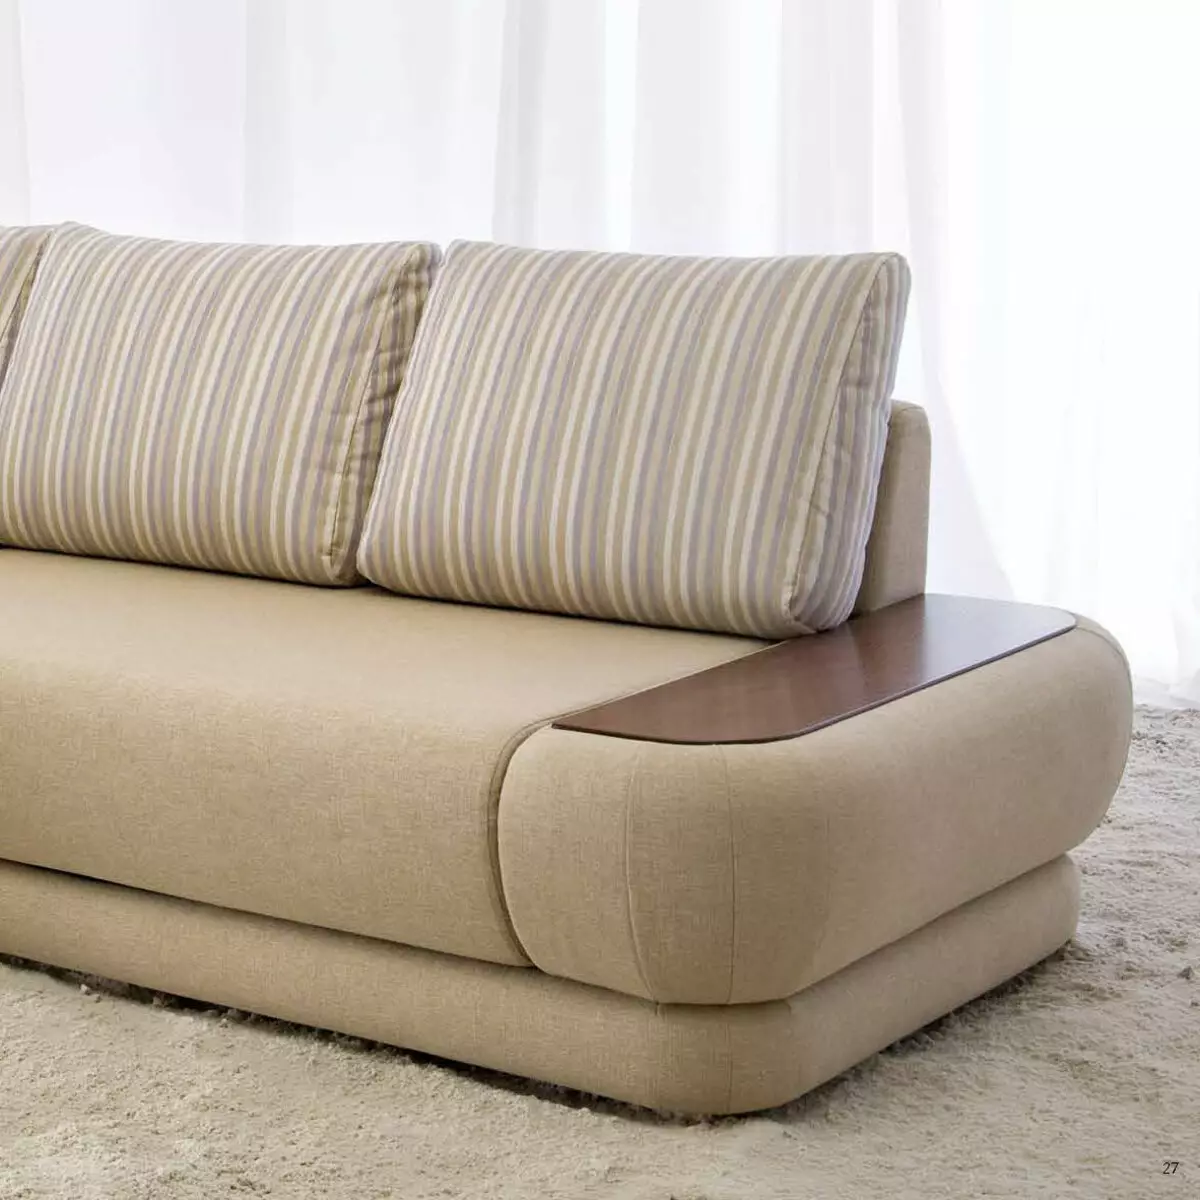 Pushe sofas: sulok, tuwid at modular, sofa bed at iba pang mga modelo mula sa pabrika. Mga Review ng Customer 9127_6